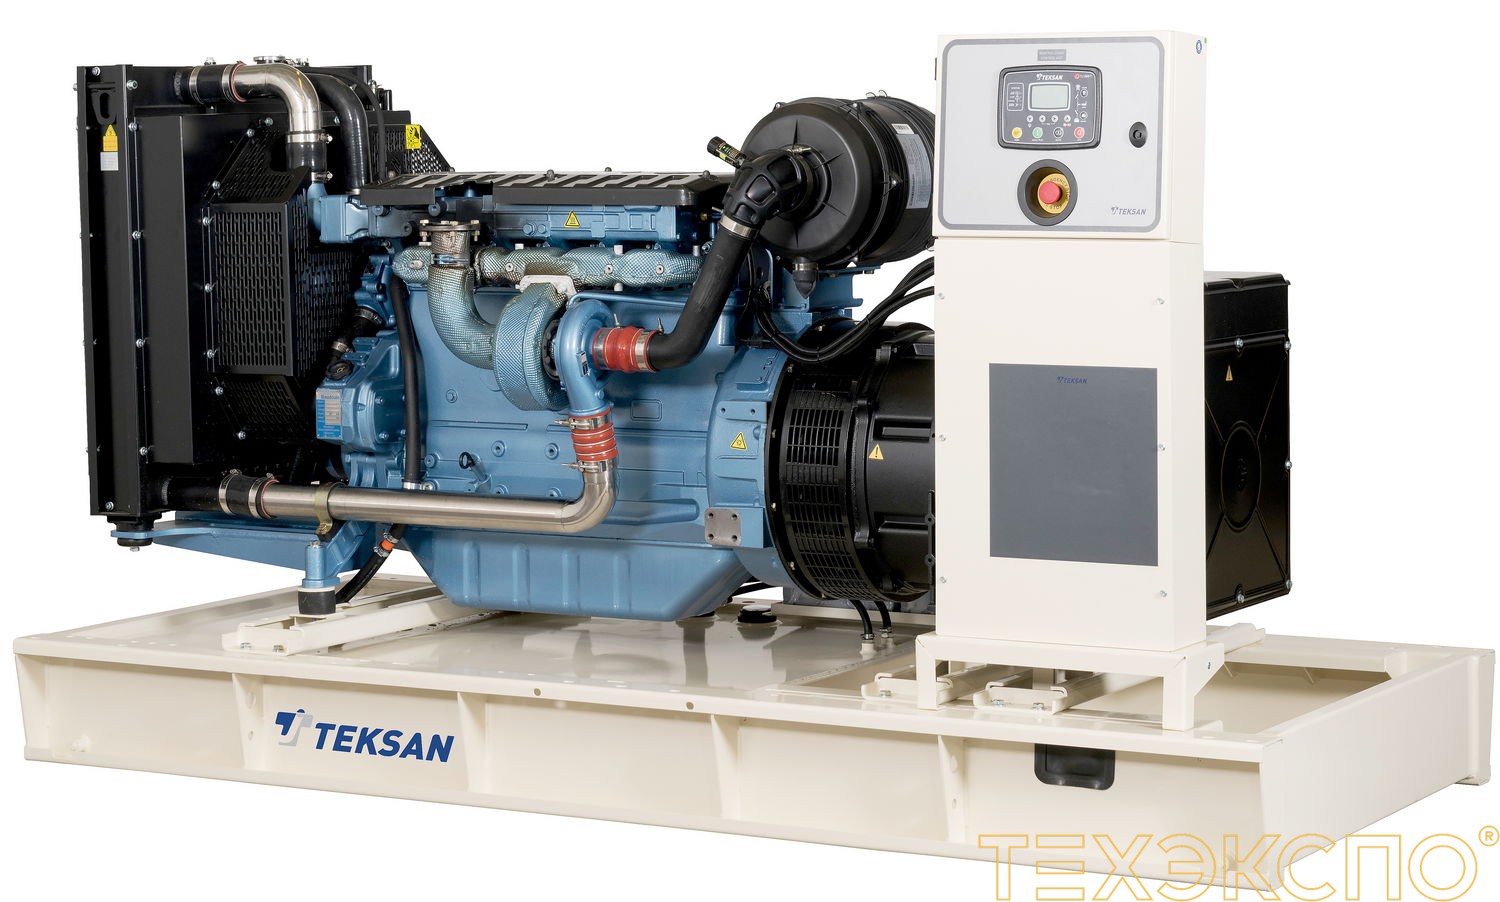 Teksan TJ400BD - ДЭС 304 кВт в Санкт-Петербурге за 3 469 324 рублей | Дизельная электростанция в Техэкспо